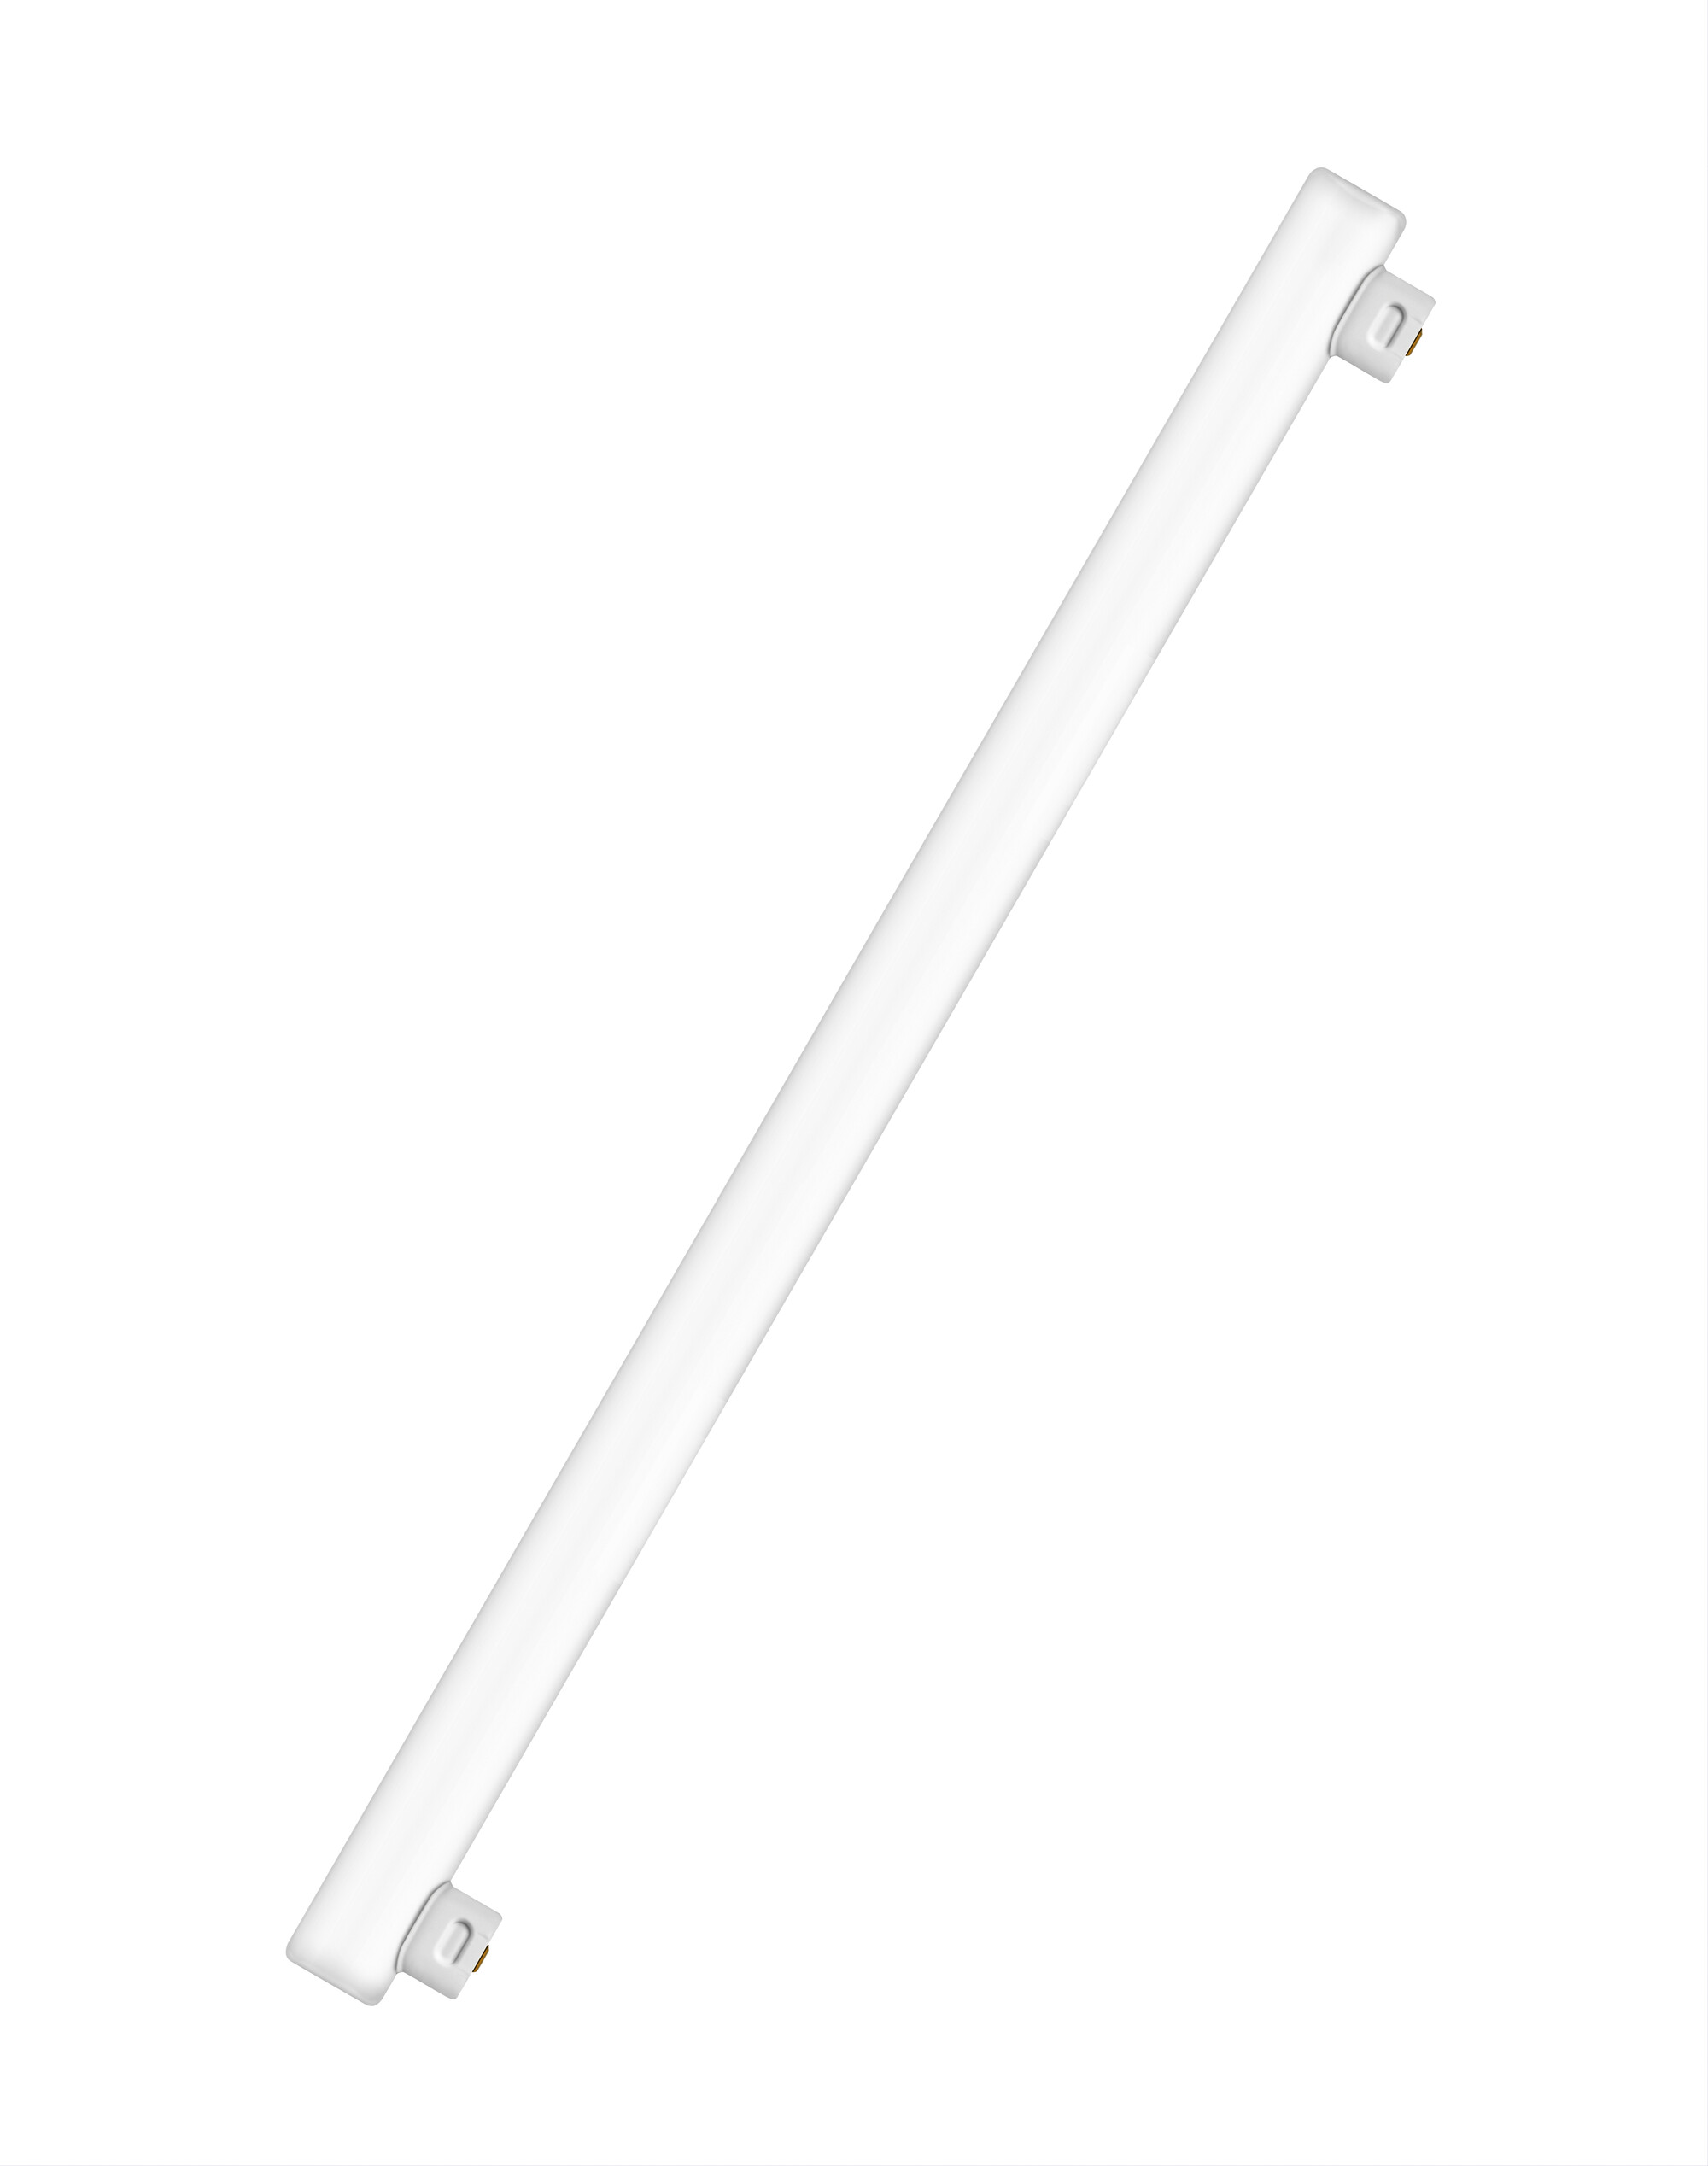 Osram LED Linienlampe LEDinestra 4,8 Watt 500mm 230 Volt 827 2700 Kelvin warmweiß extra 2 Sockel S14s